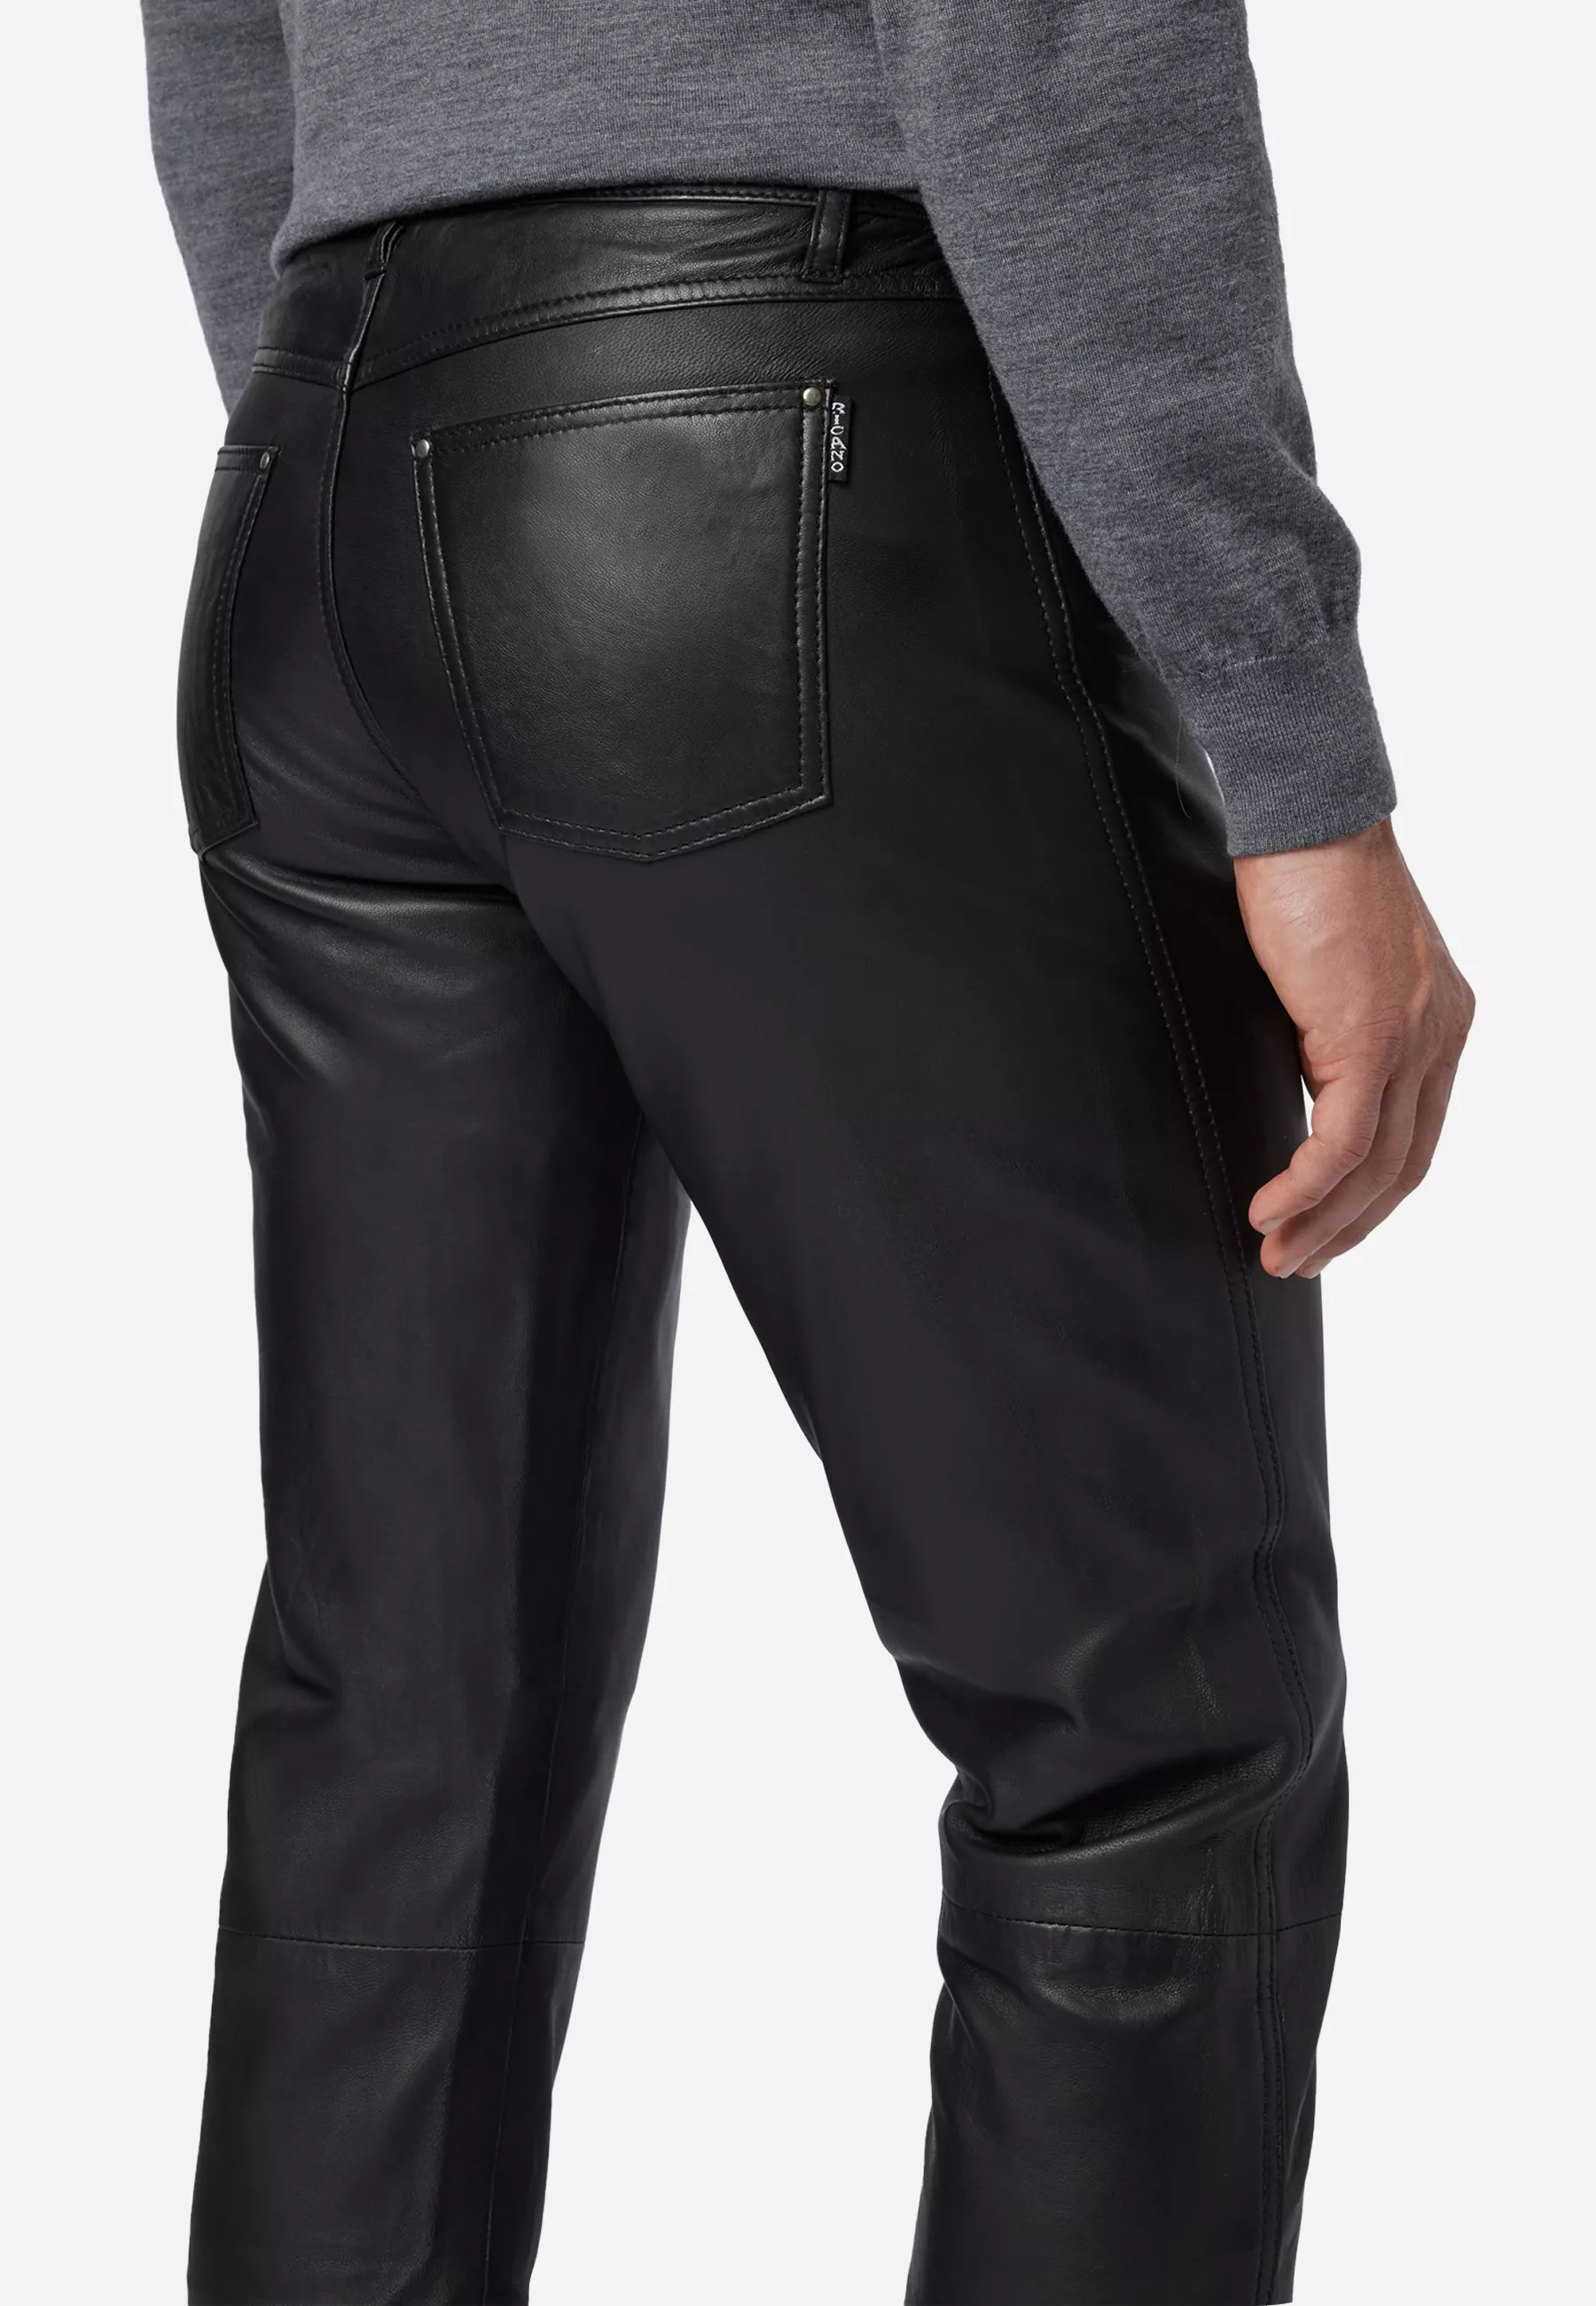 Herren Lederhose No. 3 TR Jeans in Schwarz von Ricano, Detailansicht Teilungsnaht an den Knien am Model